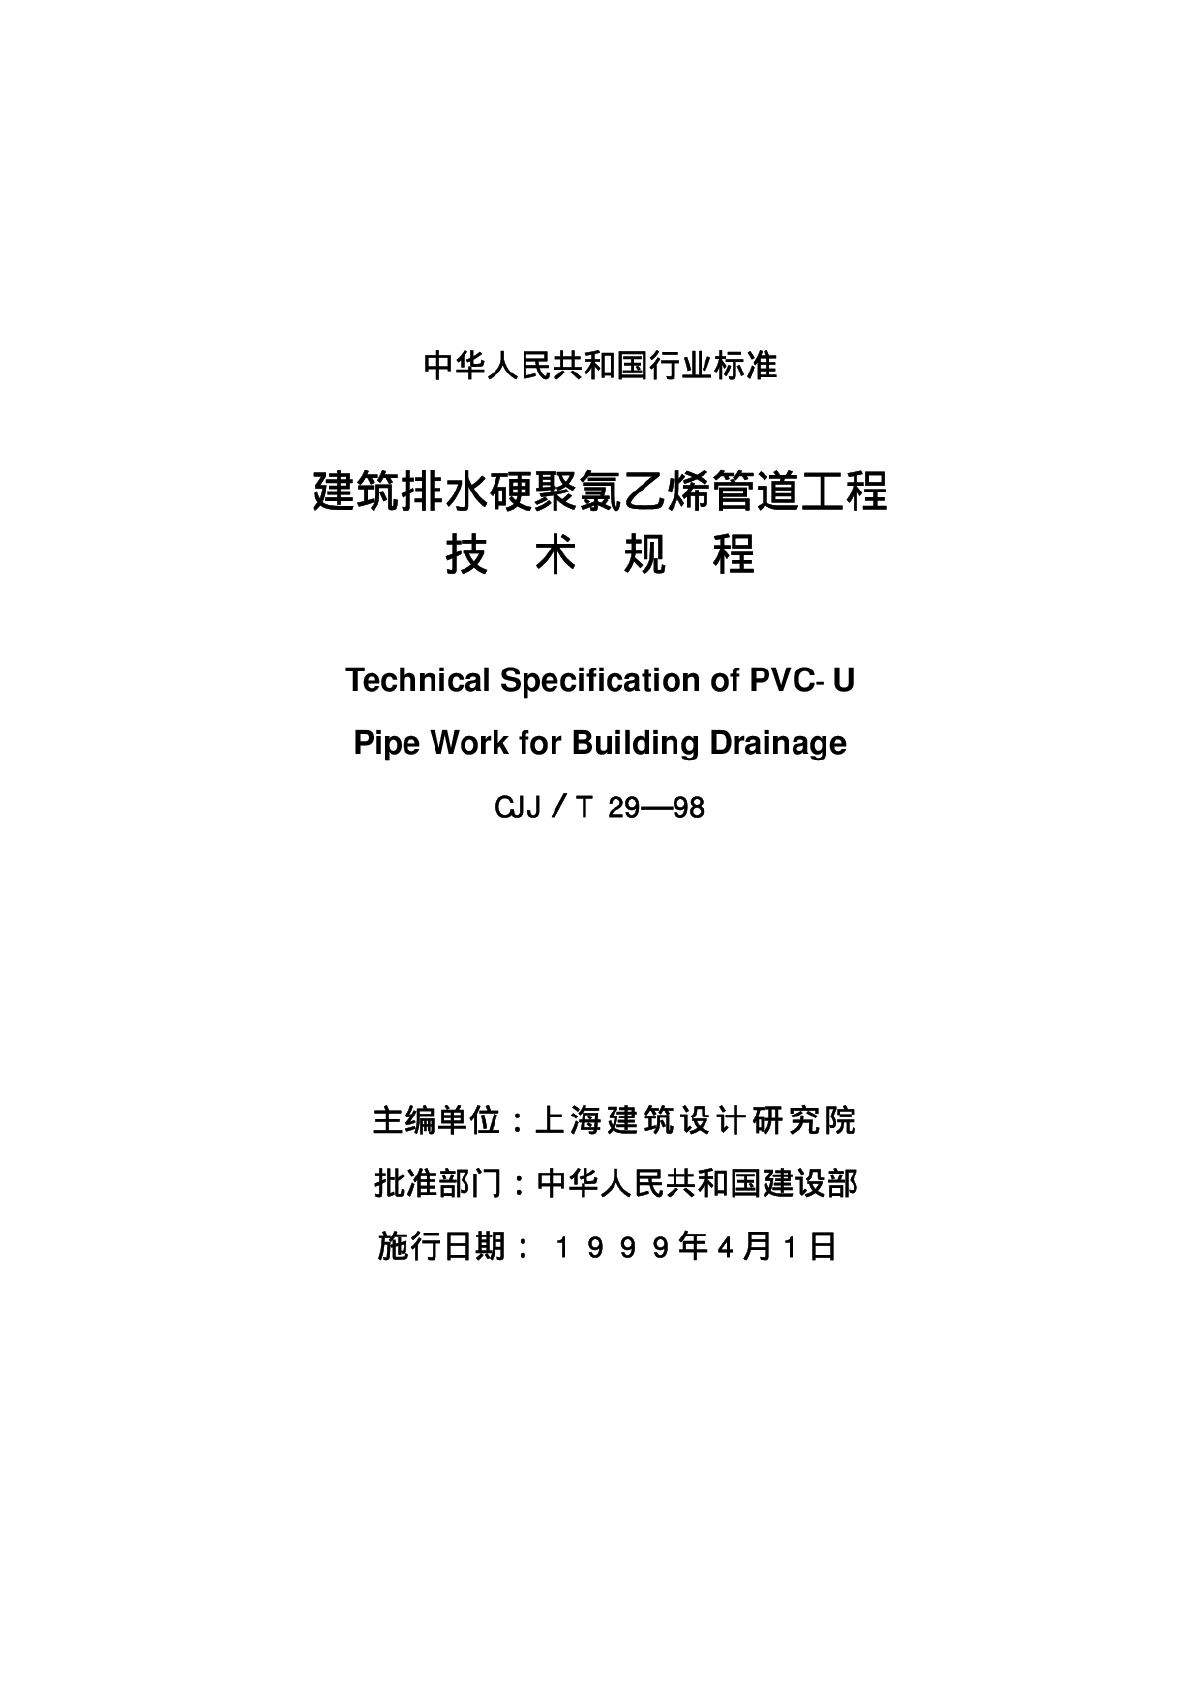 CJJT29—98建筑排水硬聚氯乙烯管道工程技术规程